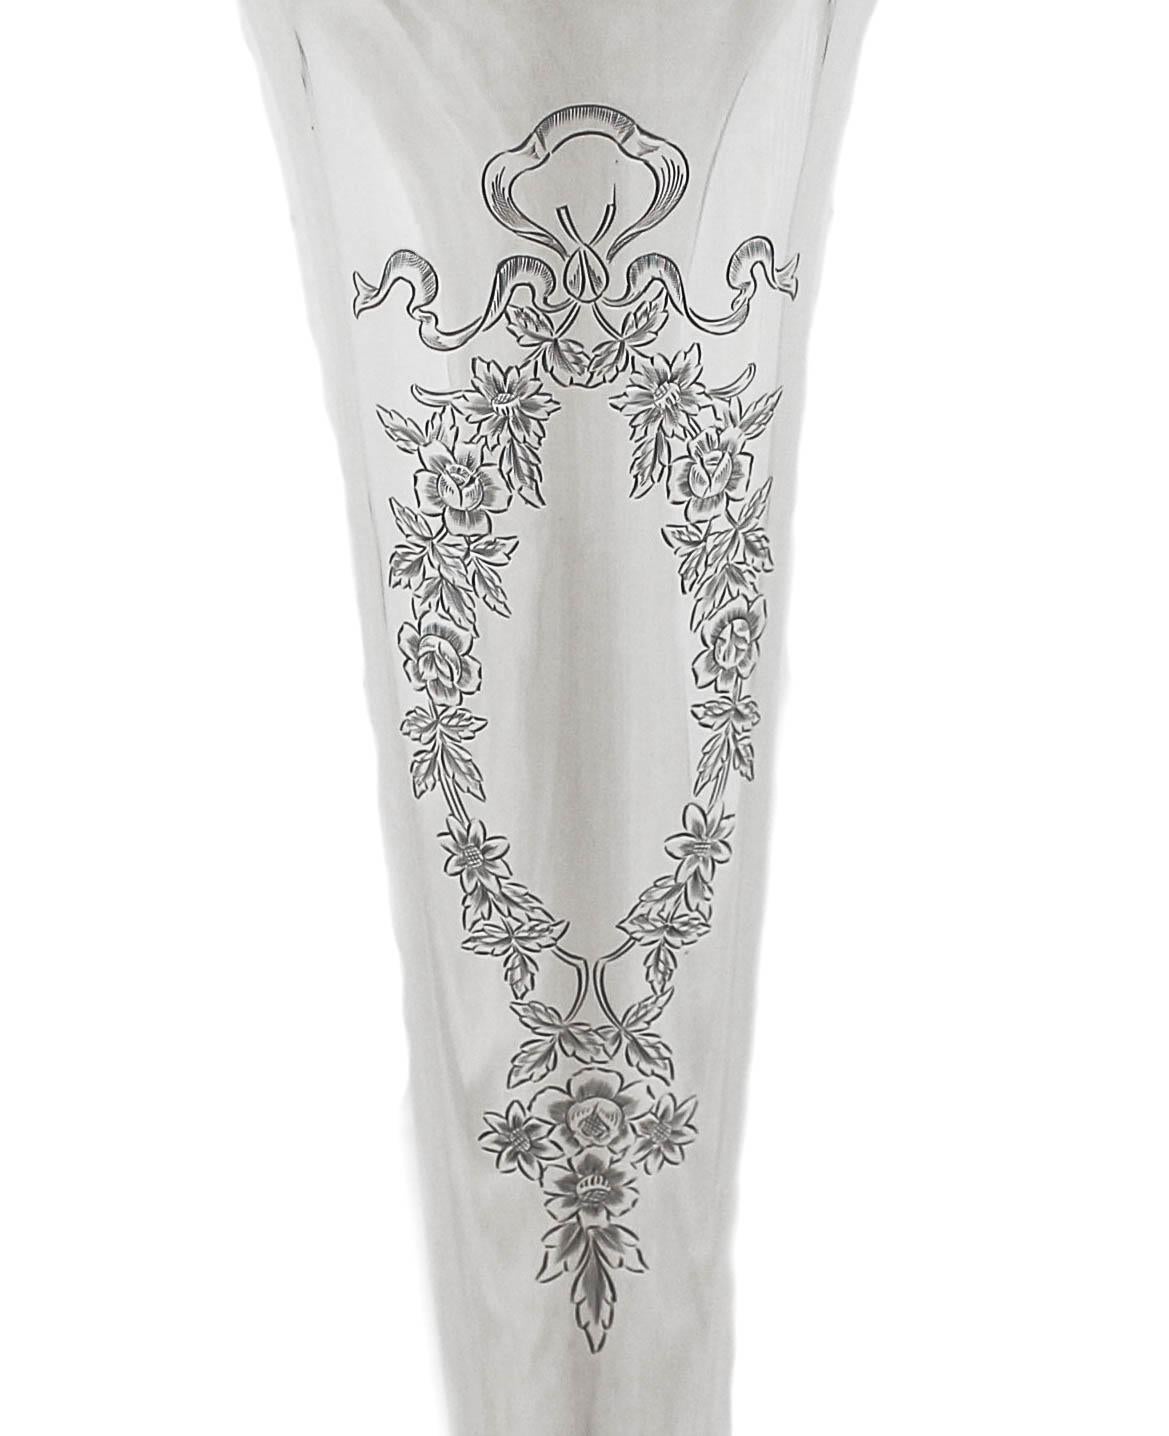 Wir freuen uns, Ihnen diese Vase aus Sterlingsilber anbieten zu können.  Er ist hoch und schlank und hat eine spitz zulaufende Form. Eine schöne Blumenkartusche wartet auf Ihr persönliches Monogramm.  Ansonsten sind keine dekorativen Ätzungen zu